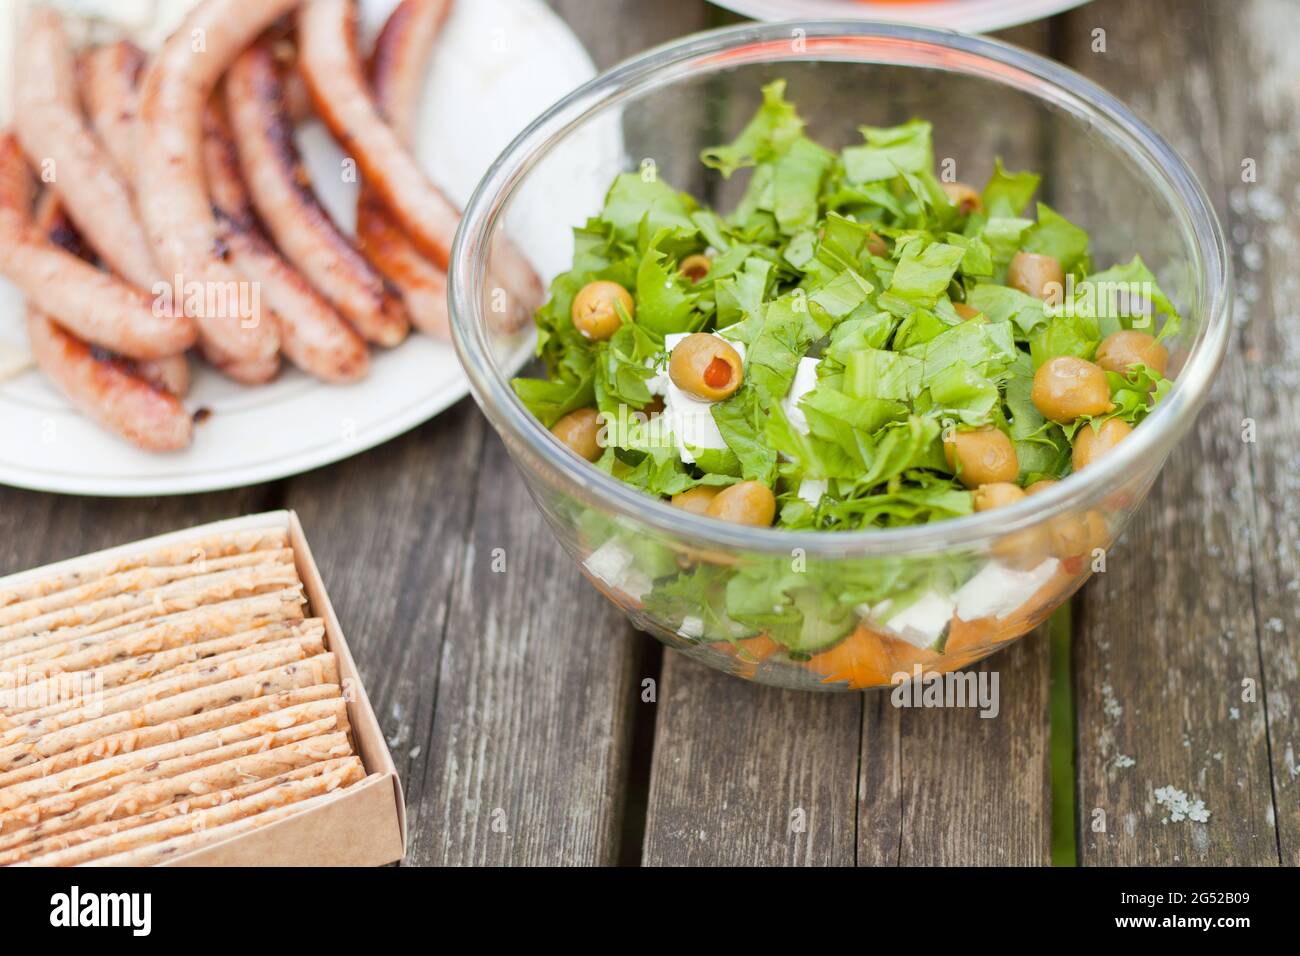 Salade fraîche et saine avec olives et chas de feta sur une table en bois. Croustilles cuites au four avec des saucisses au moment du pique-nique. Plats frais et savoureux Banque D'Images